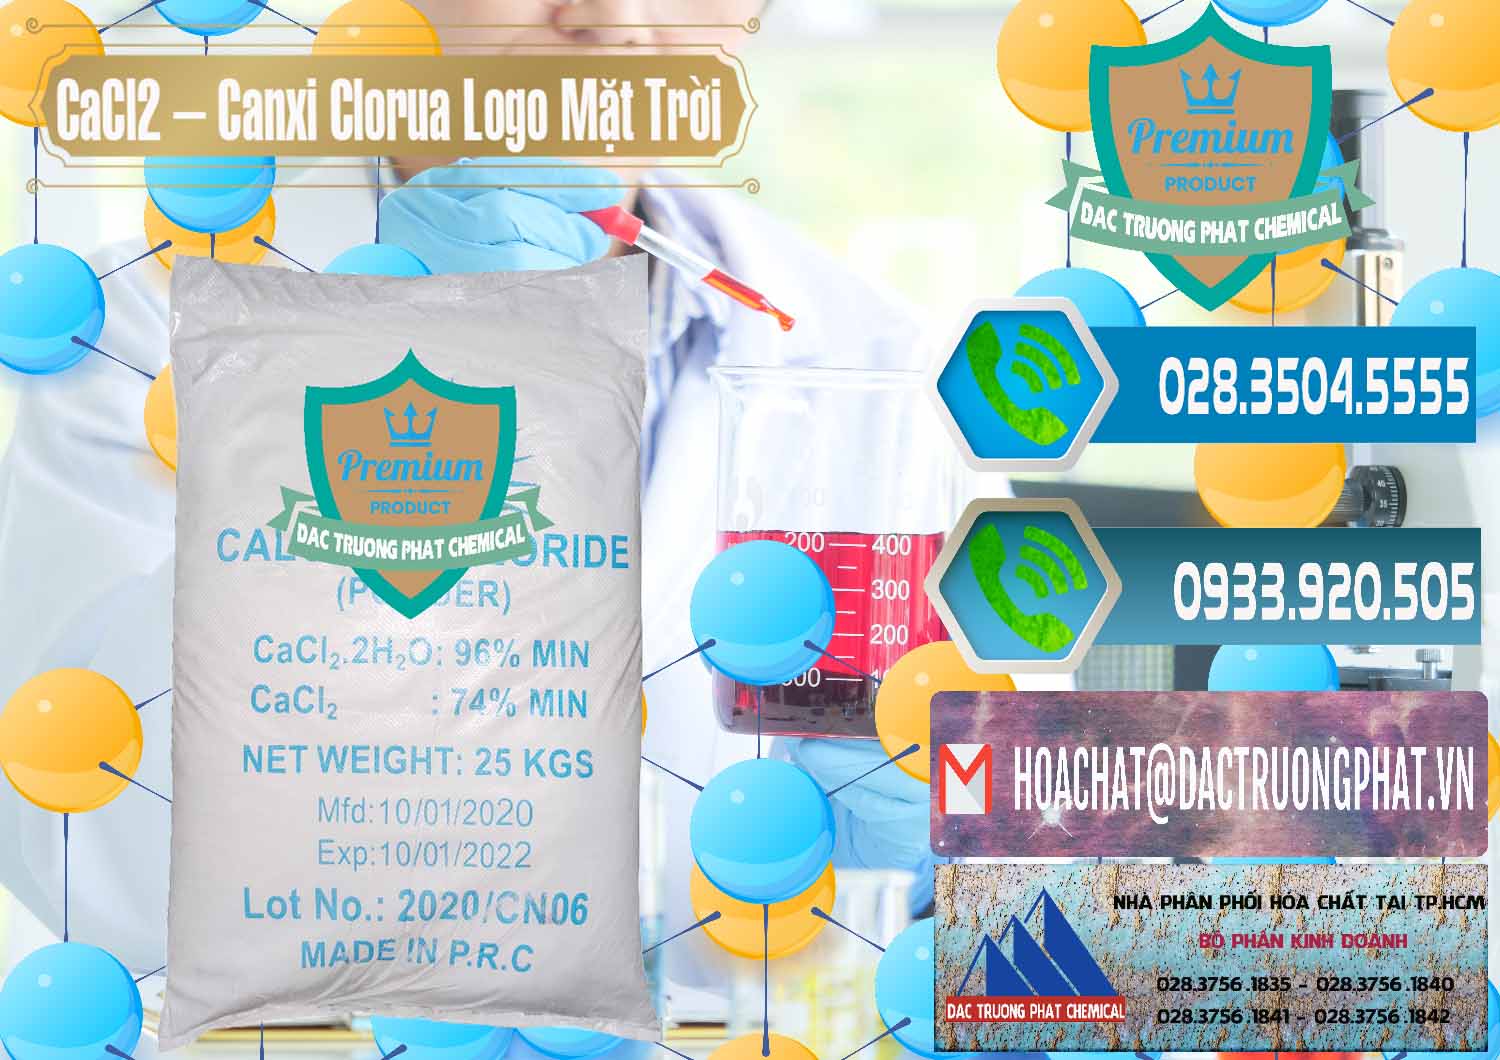 Đơn vị chuyên kinh doanh và bán CaCl2 – Canxi Clorua 96% Logo Mặt Trời Trung Quốc China - 0041 - Bán & cung cấp hóa chất tại TP.HCM - congtyhoachat.net